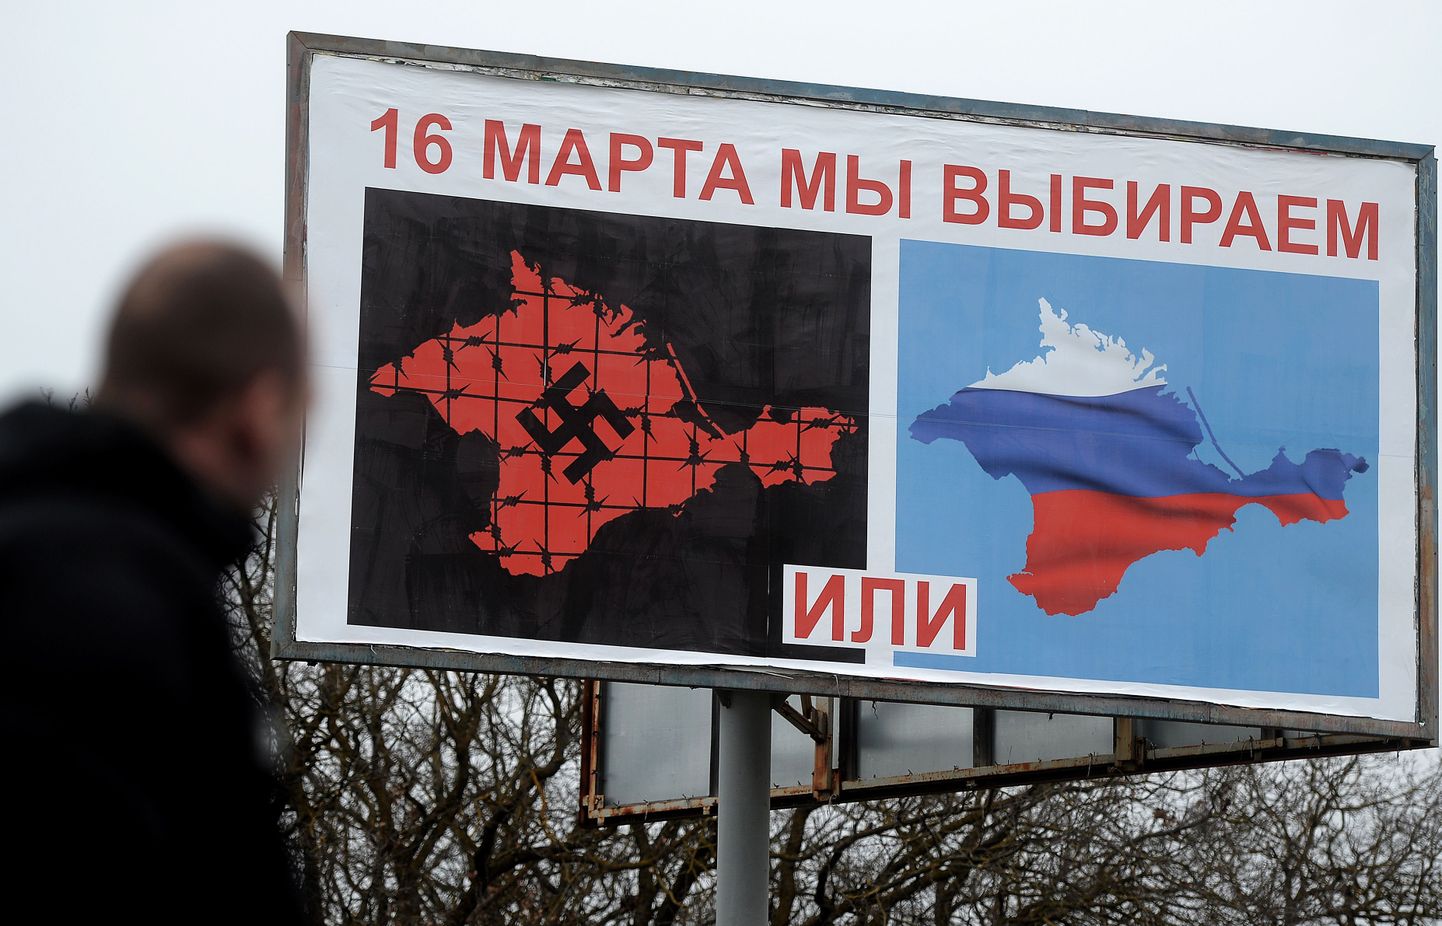 Plakat Sevastopolis, mis väidab, et Krimmi poolsaare elanikel oli valik Venemaa ja natside vahel.